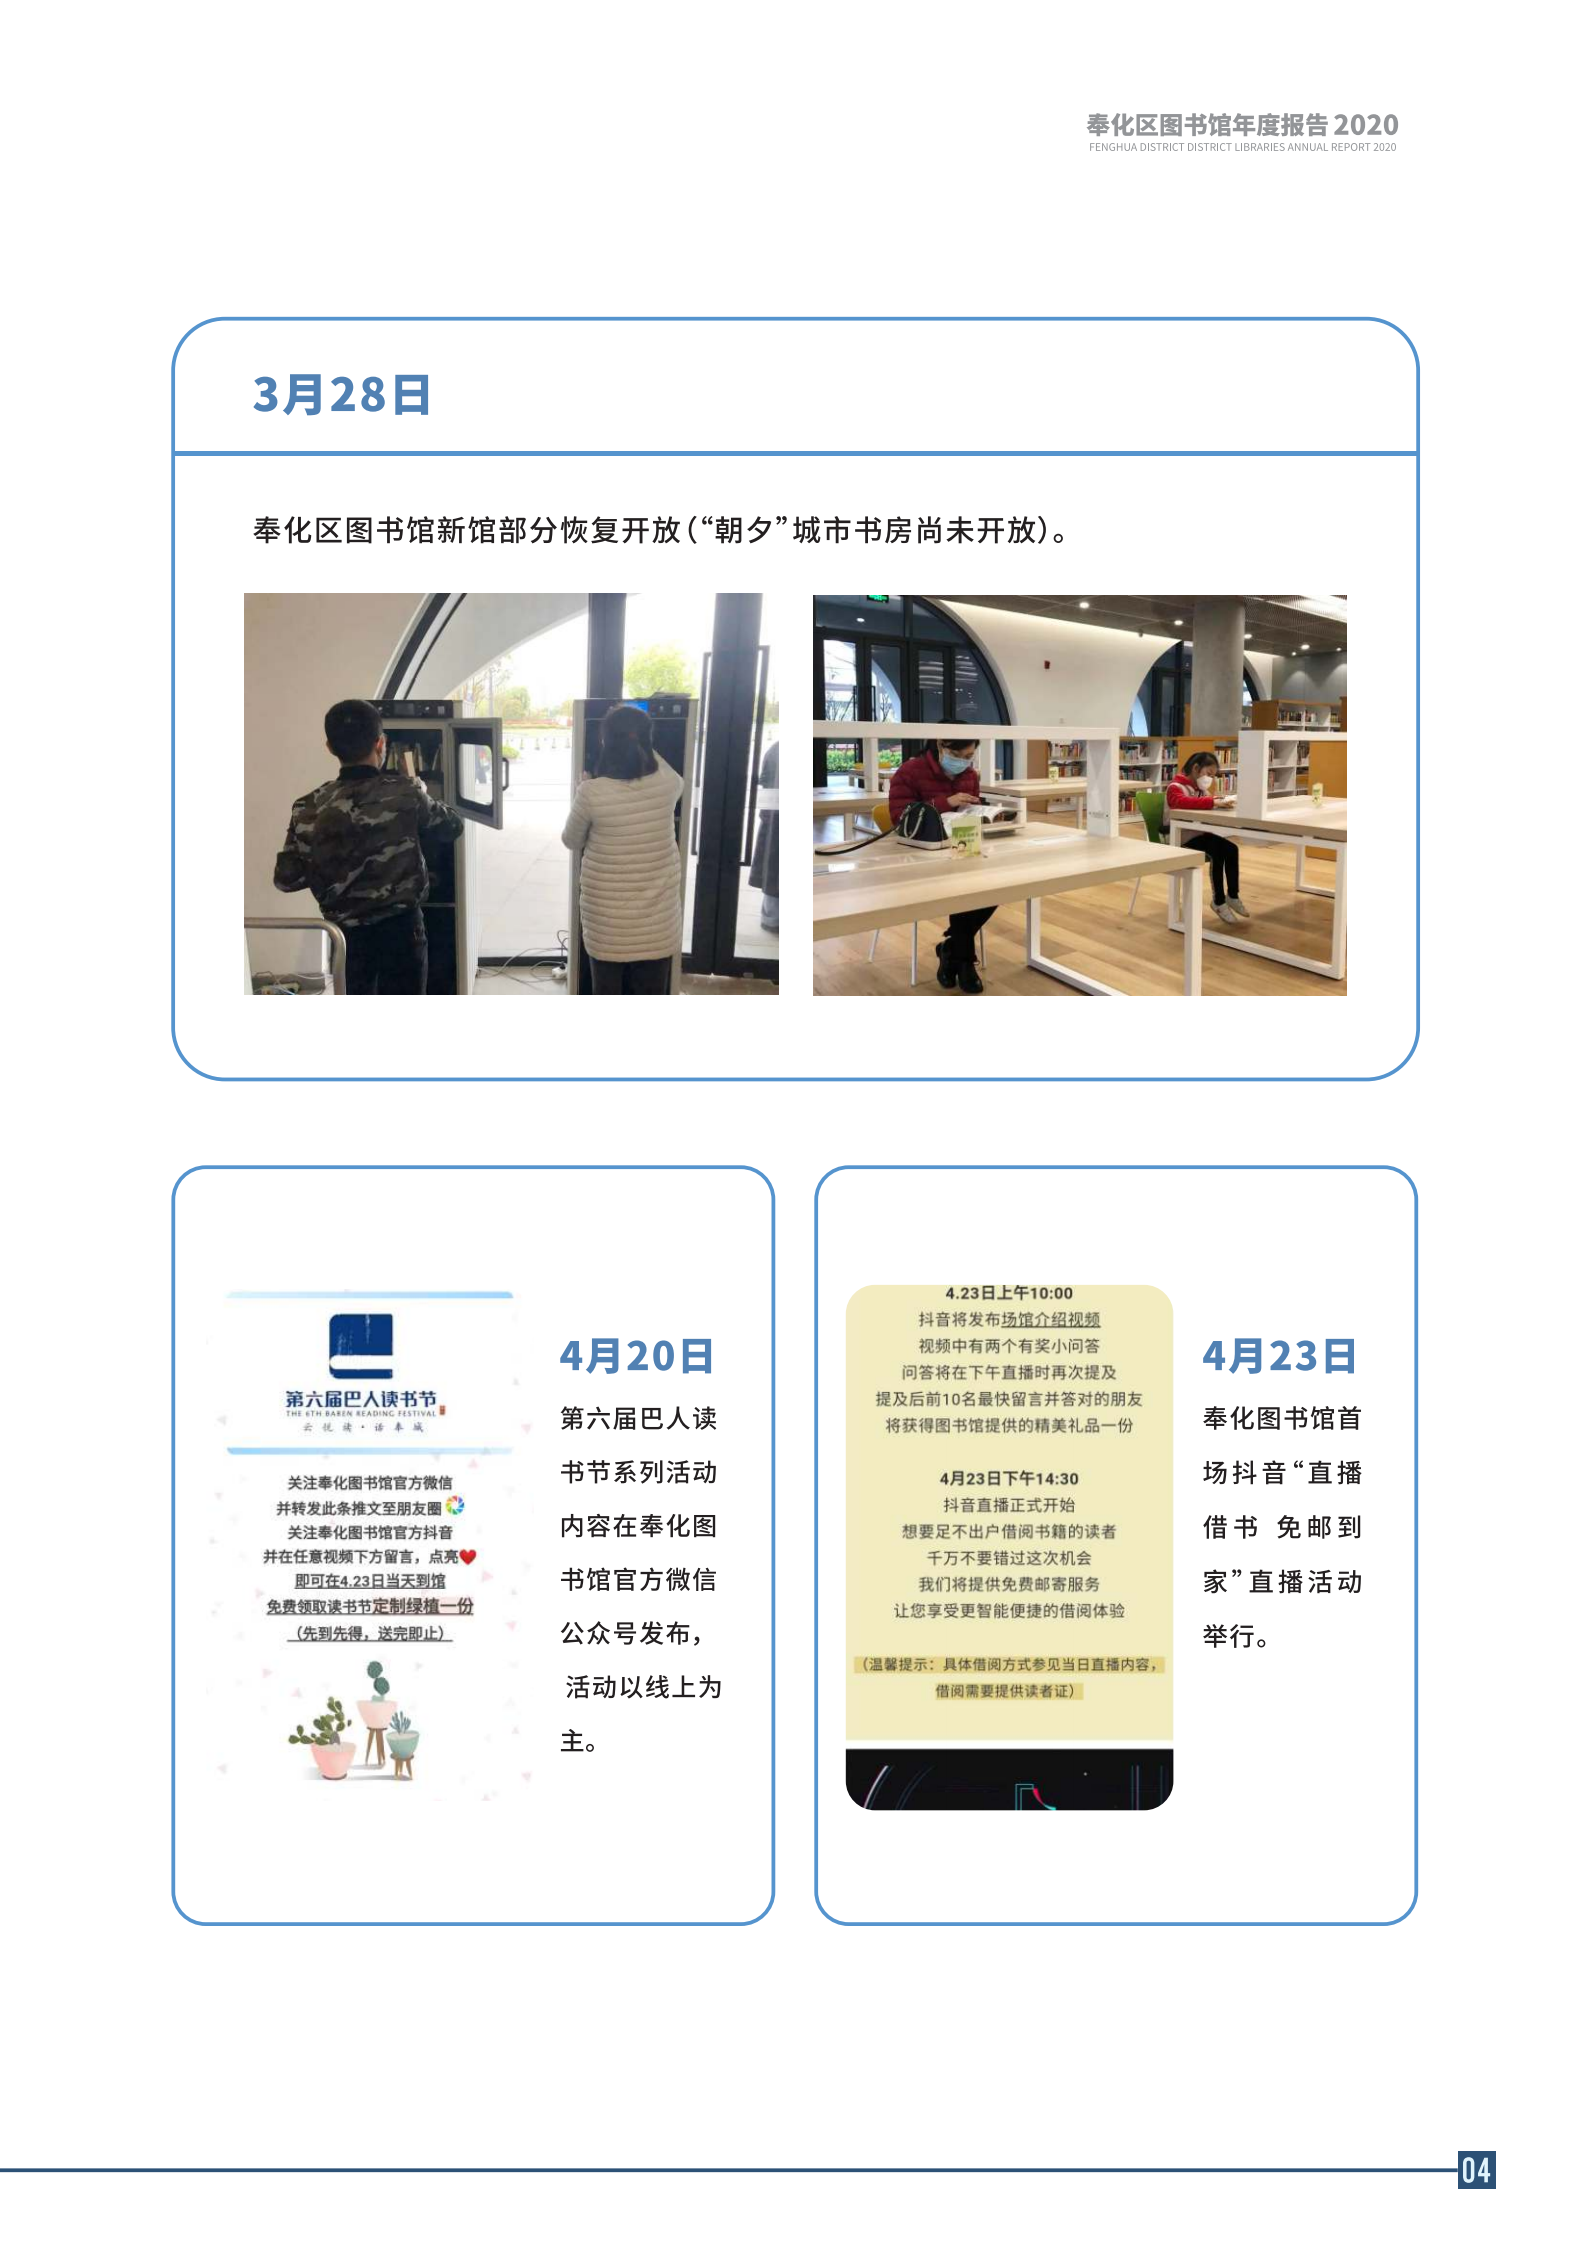 宁波市奉化区图书馆2020年年度报告 终稿_04.png